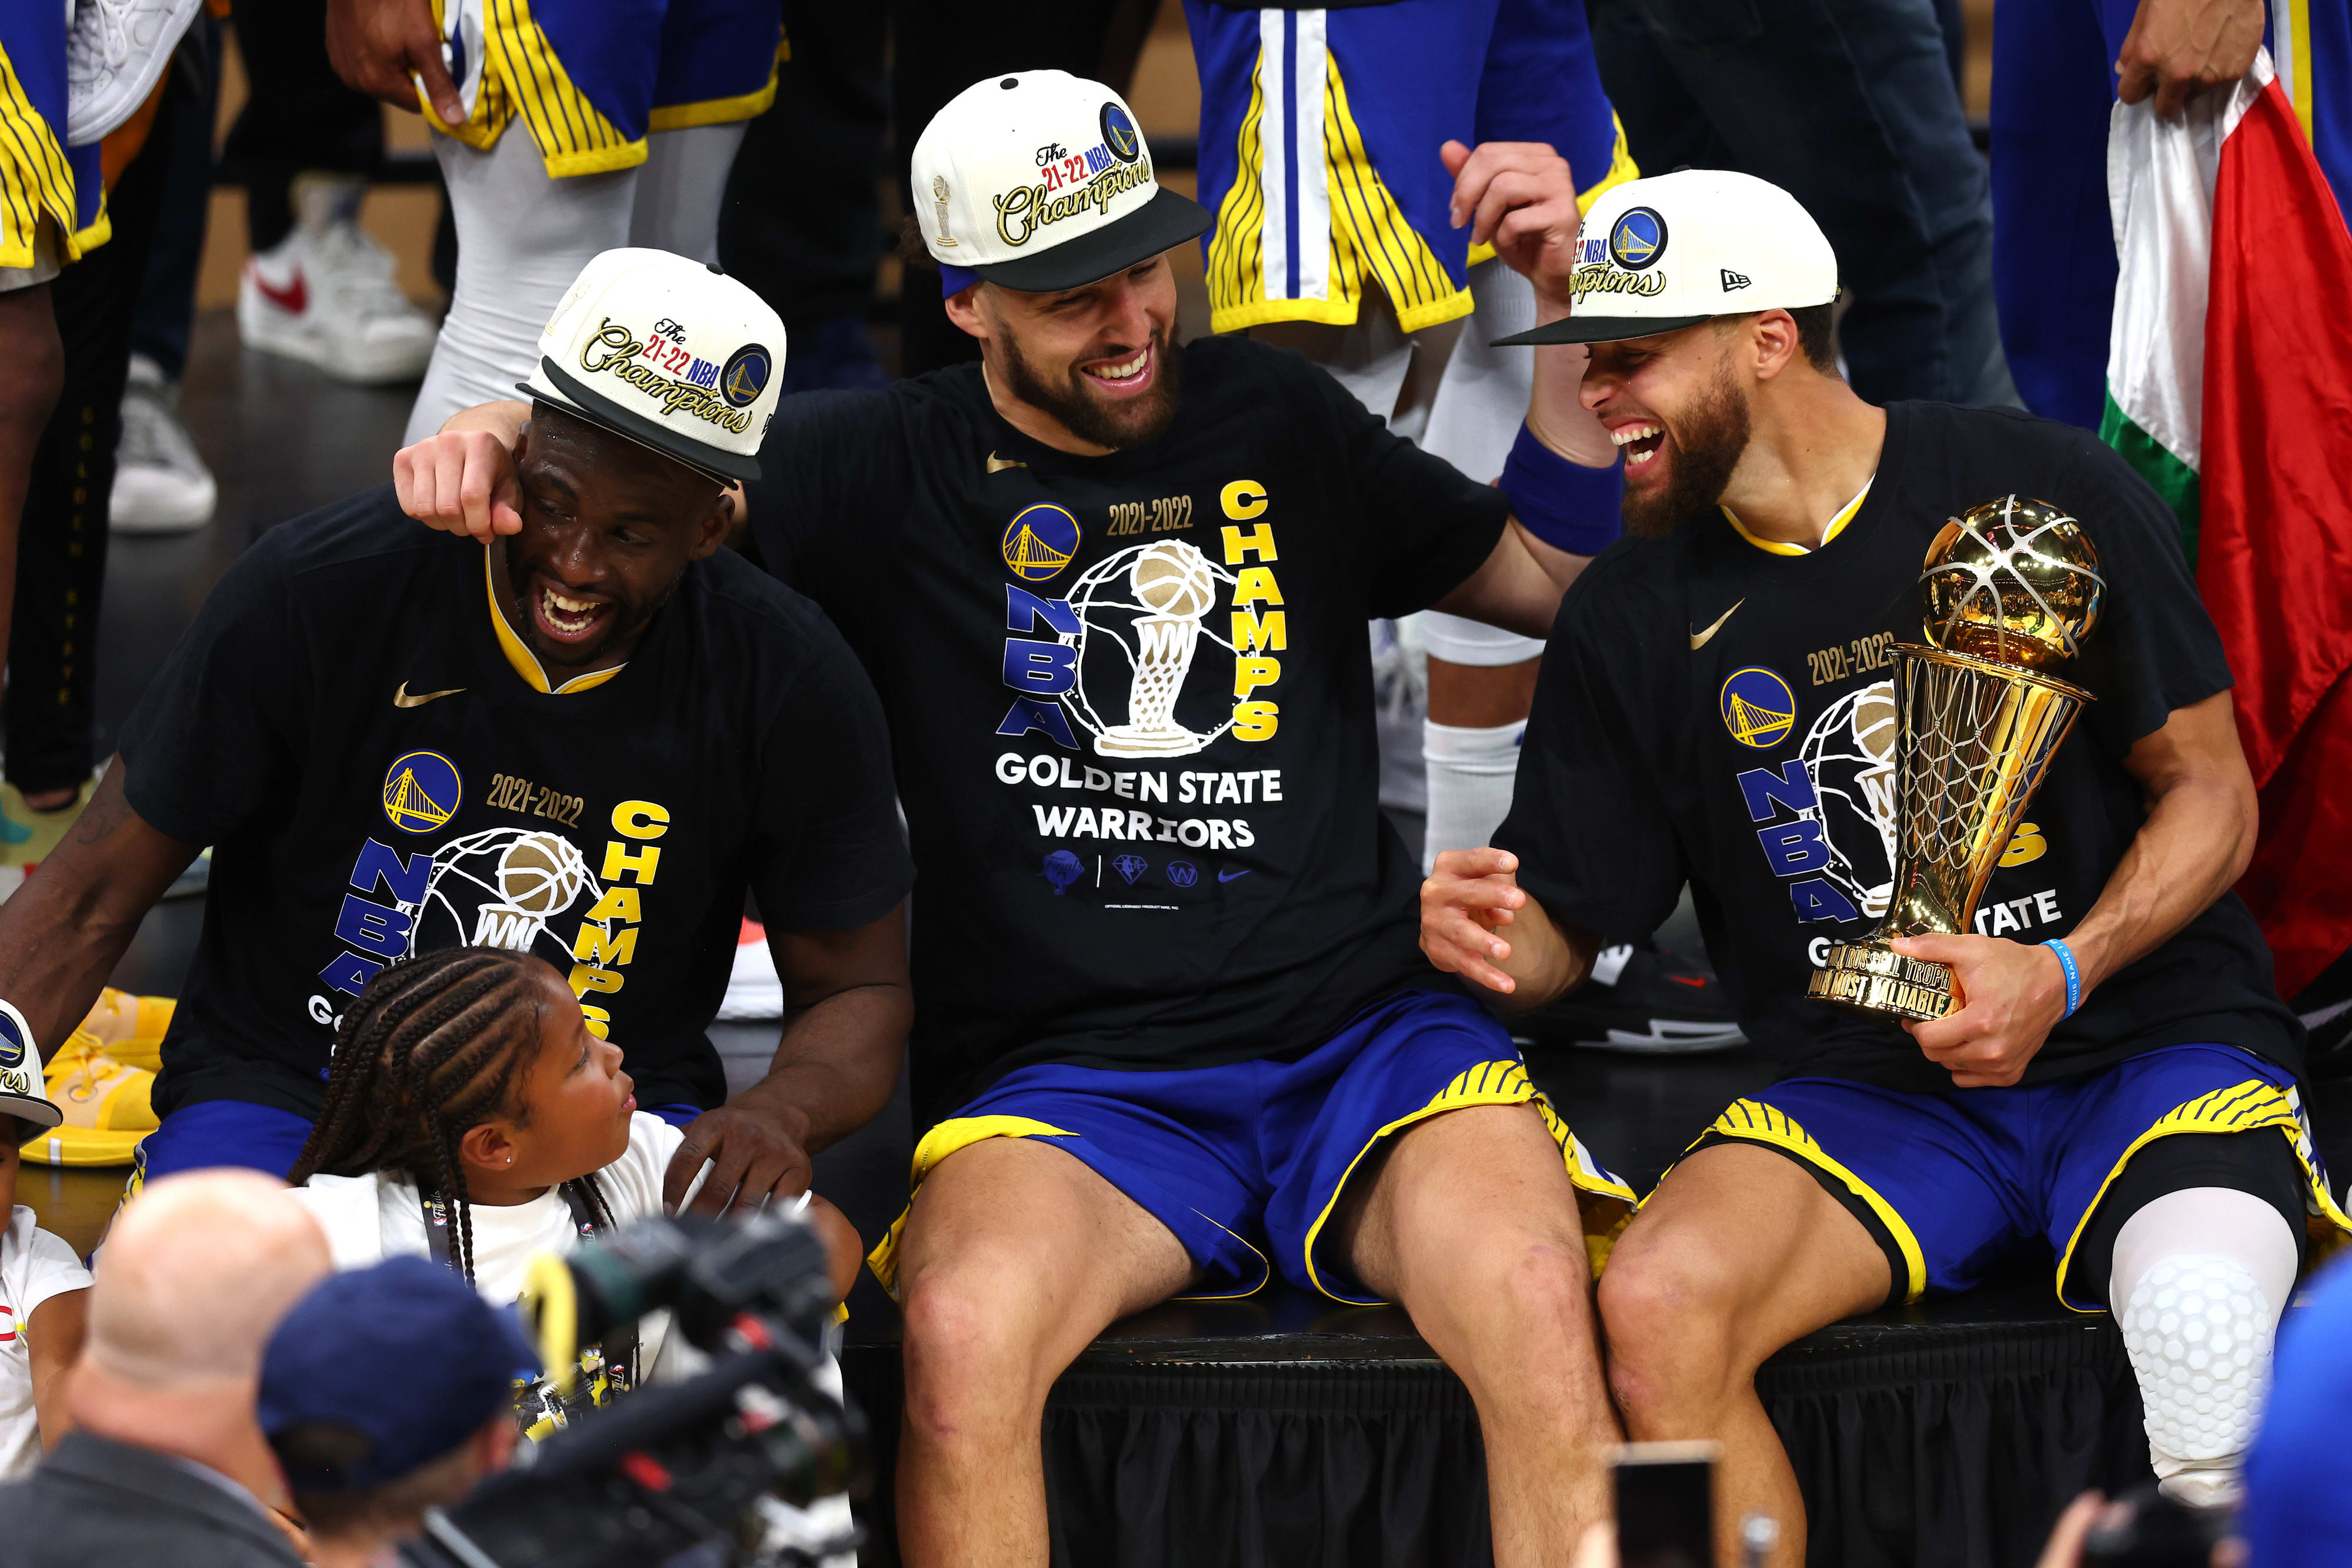 סטפן קרי, דריימונד גרין, קליי תומפסון: שלושת כוכבי גולדן סטייט ווריירס חוגגים זכייה באליפות ה-NBA, יוני 2022